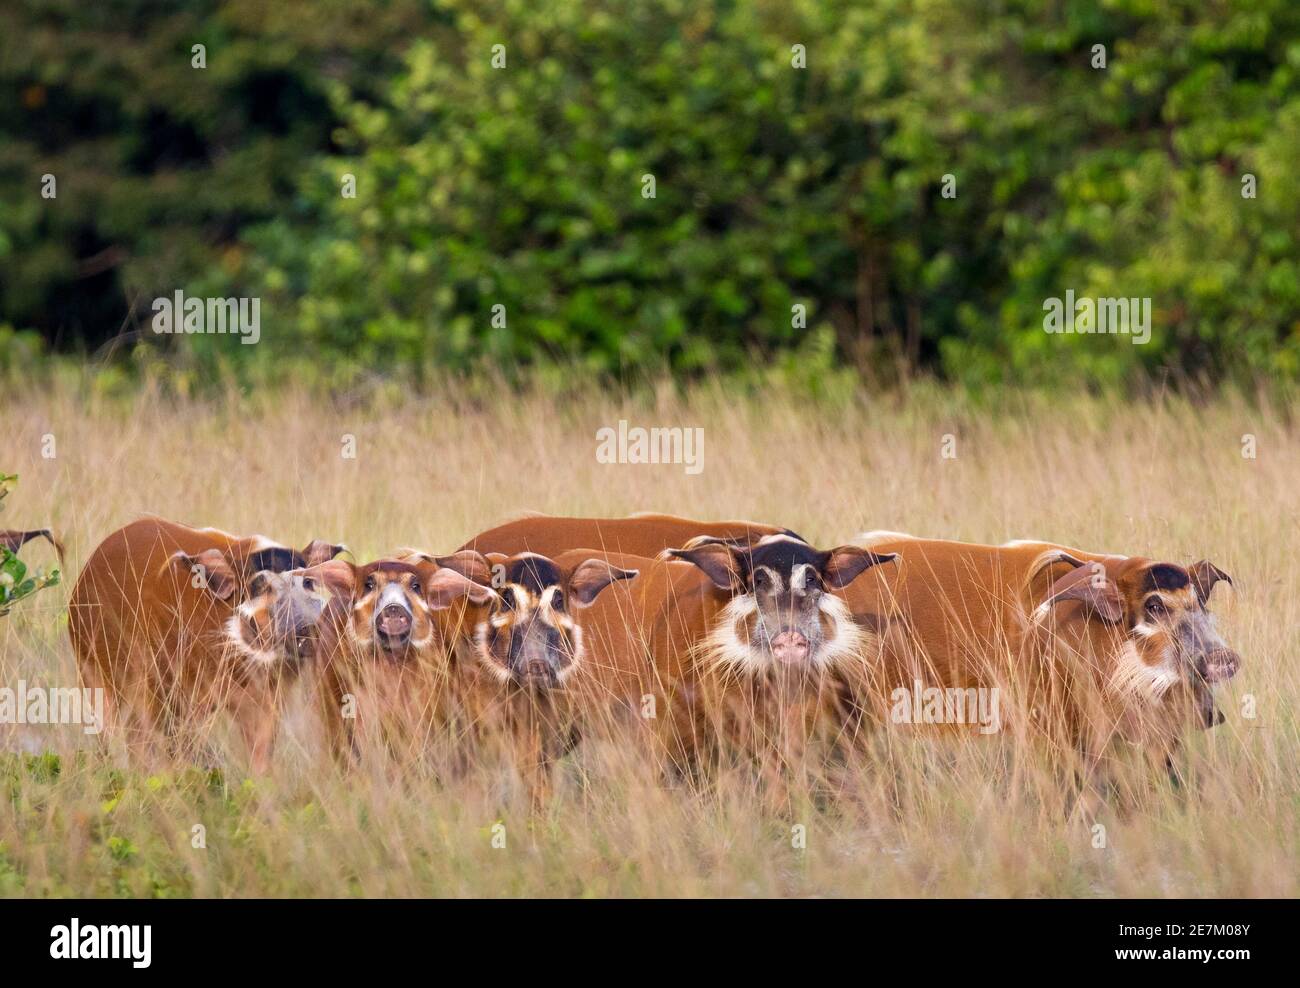 Groupe de porcs de la rivière Rouge (Potamochoerus porcus) en herbe longue, parc national de Loango, Gabon, Afrique centrale. Banque D'Images